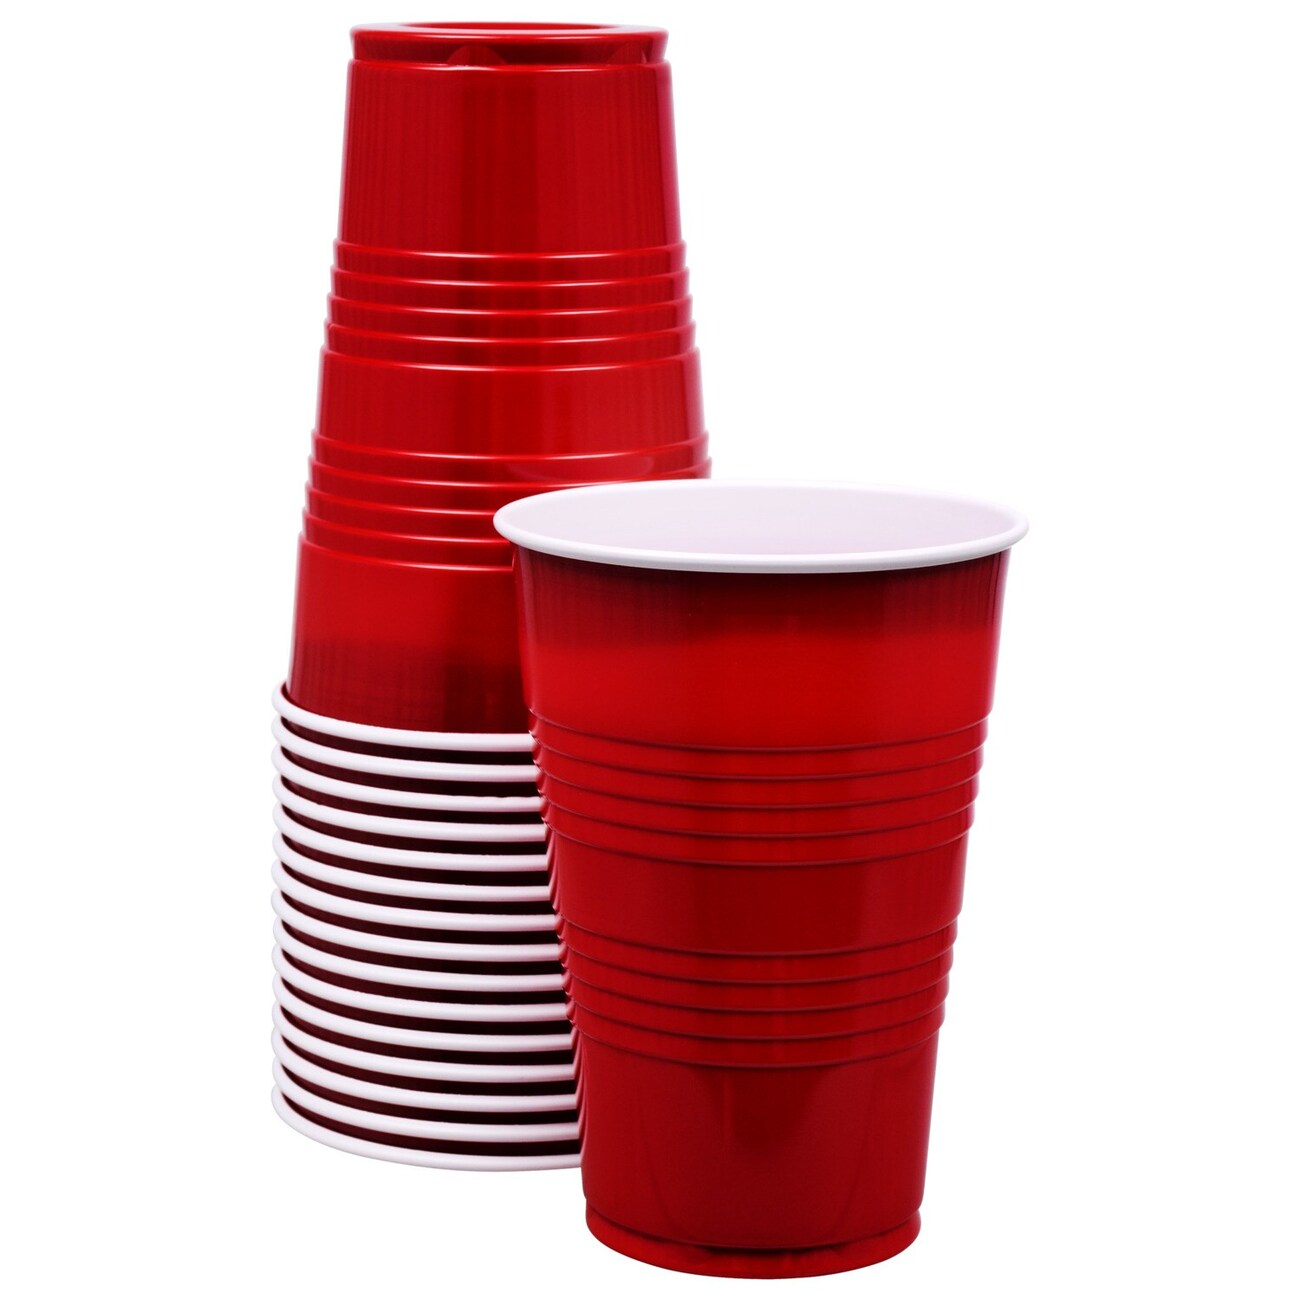 Red Plastic Party Cups, 16 oz. NOT Littlest Pet Shop 